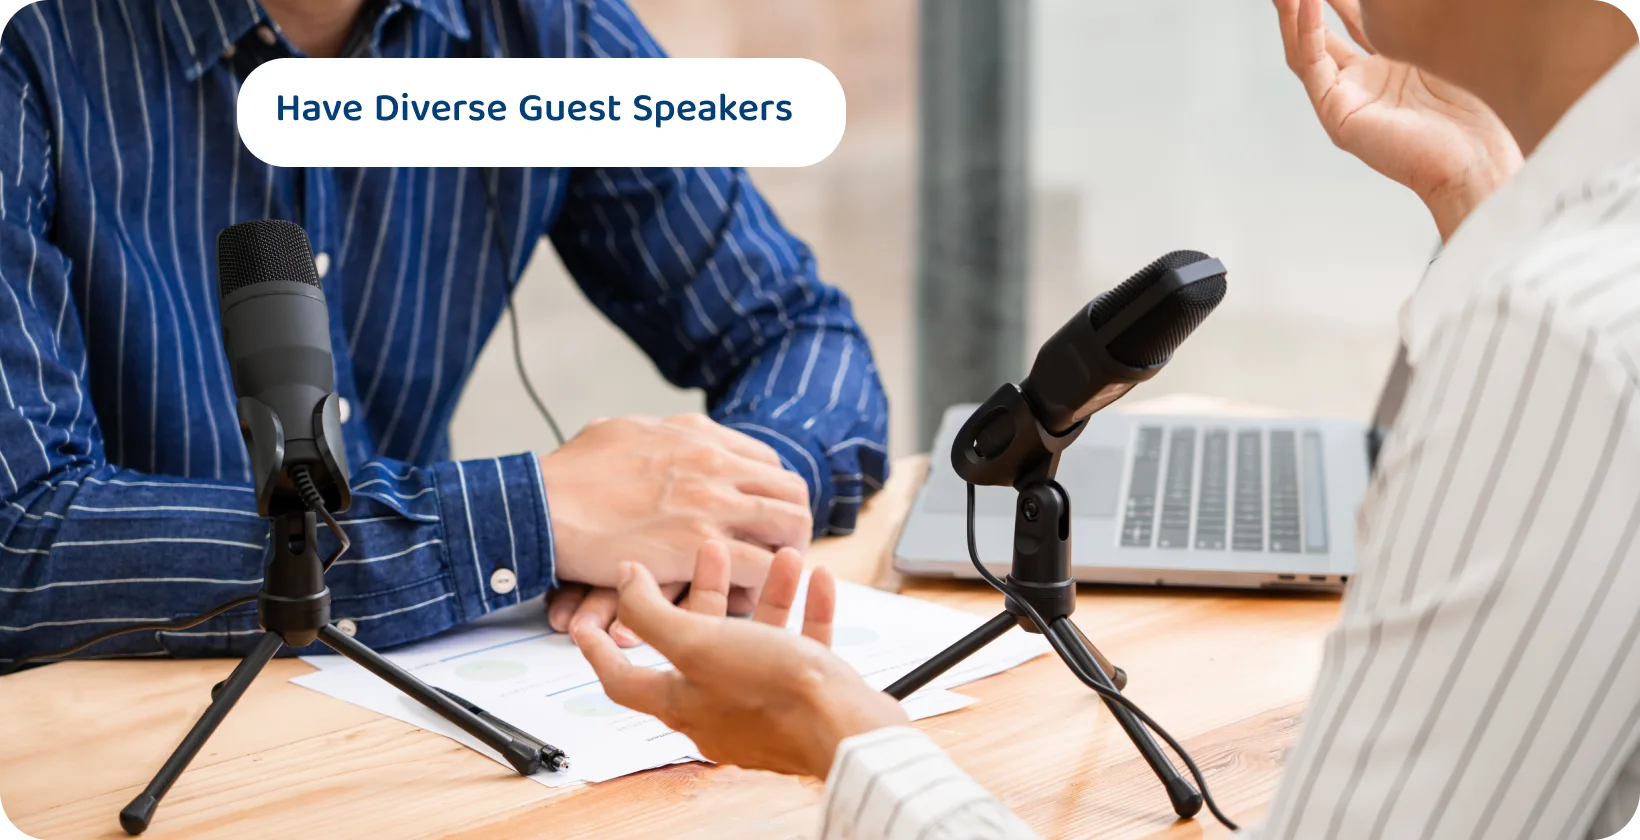 Dva podkastera sa mikrofonima o kojima se diskutuje mogu biti saveti za angažovanje i raznovrsne sesije govornika gostiju.